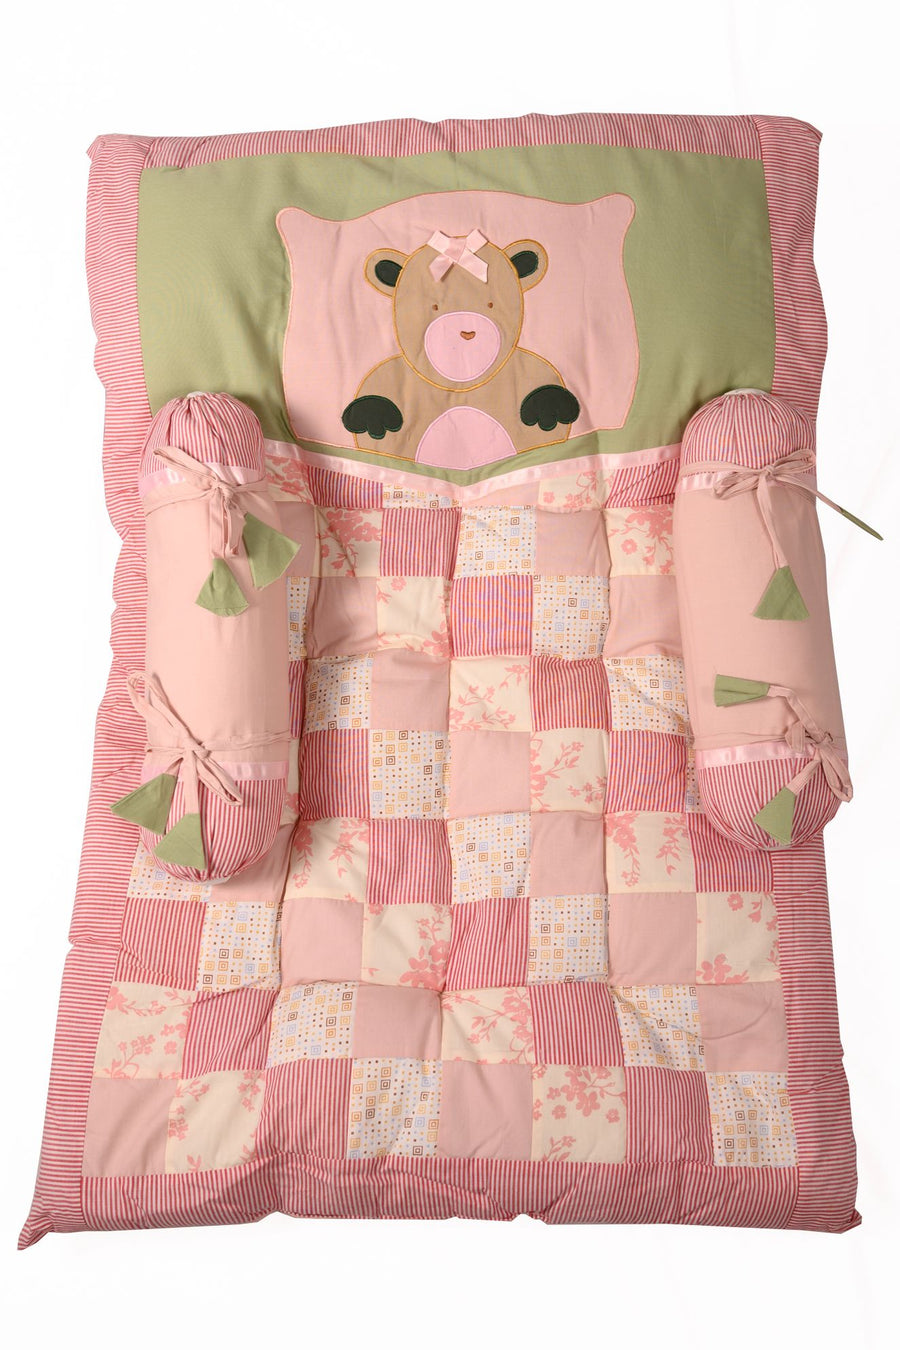 Pink Teddy Bear - Newborn Mattress Set